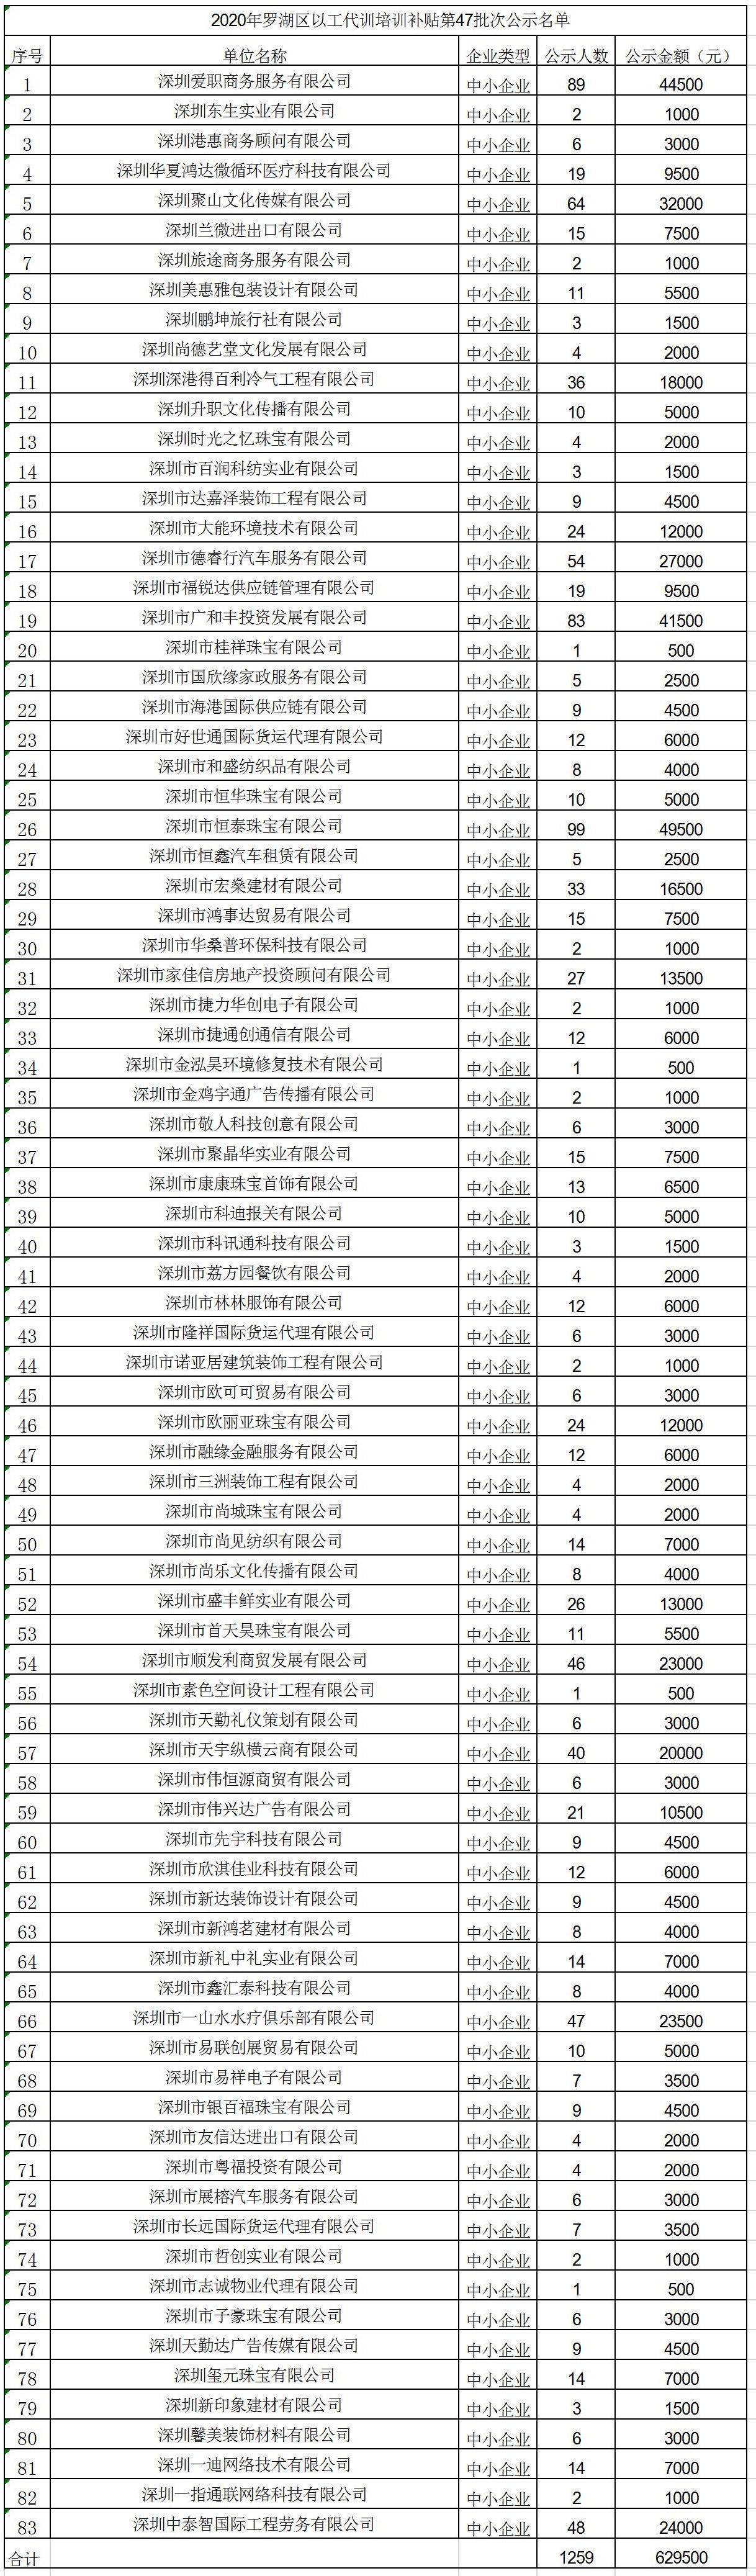 2020年深圳市罗湖区以工代训培训补贴第47批次公示名单.jpg